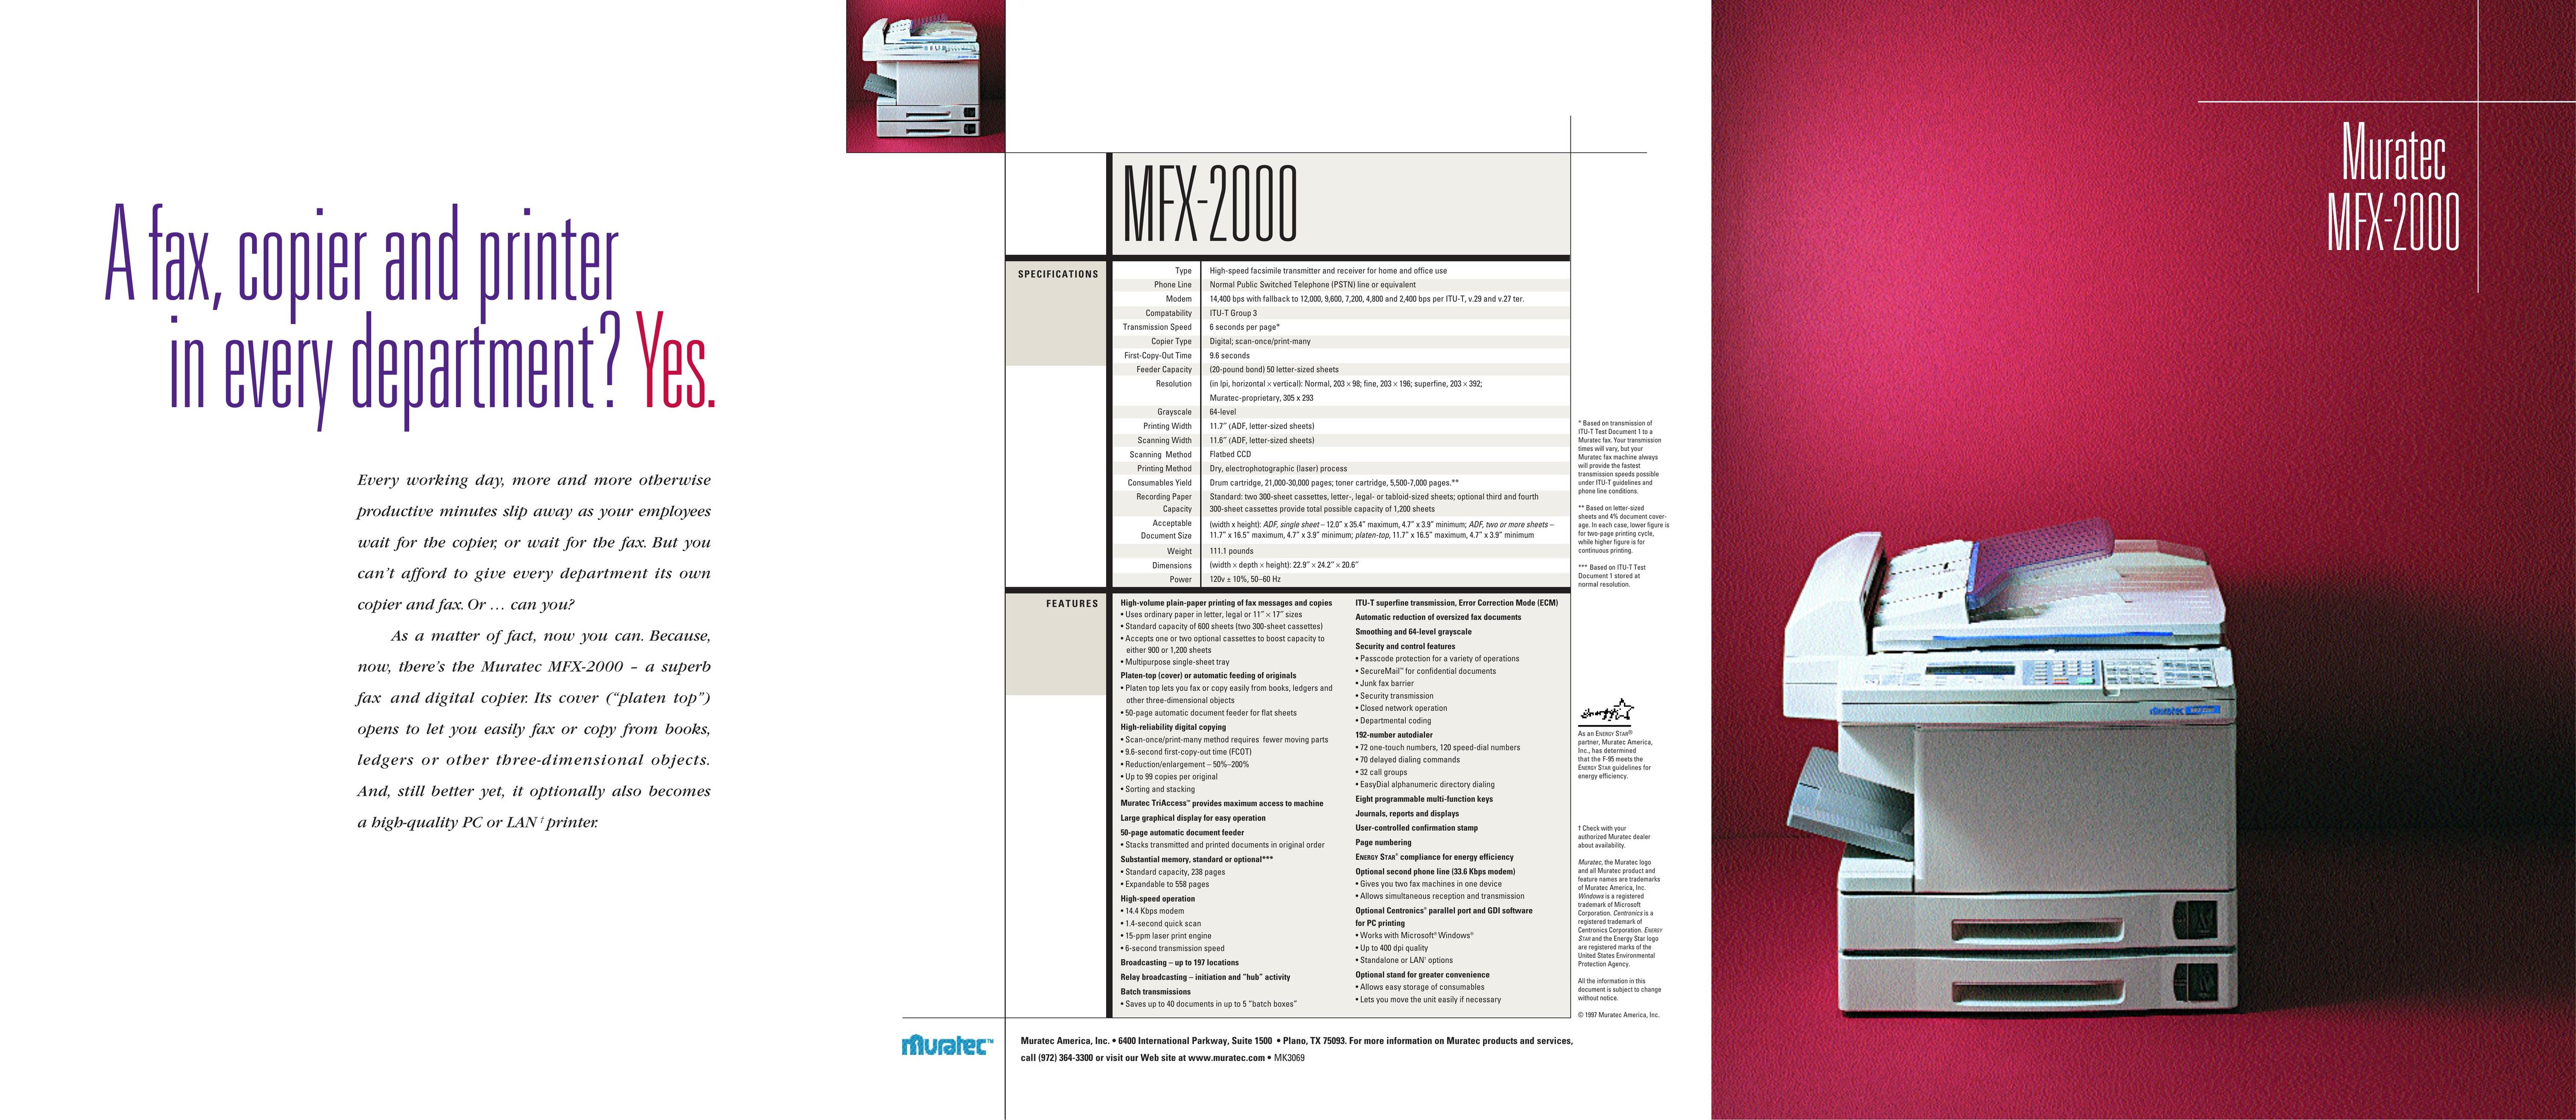 Muratec MFX-2000 All in One Printer User Manual